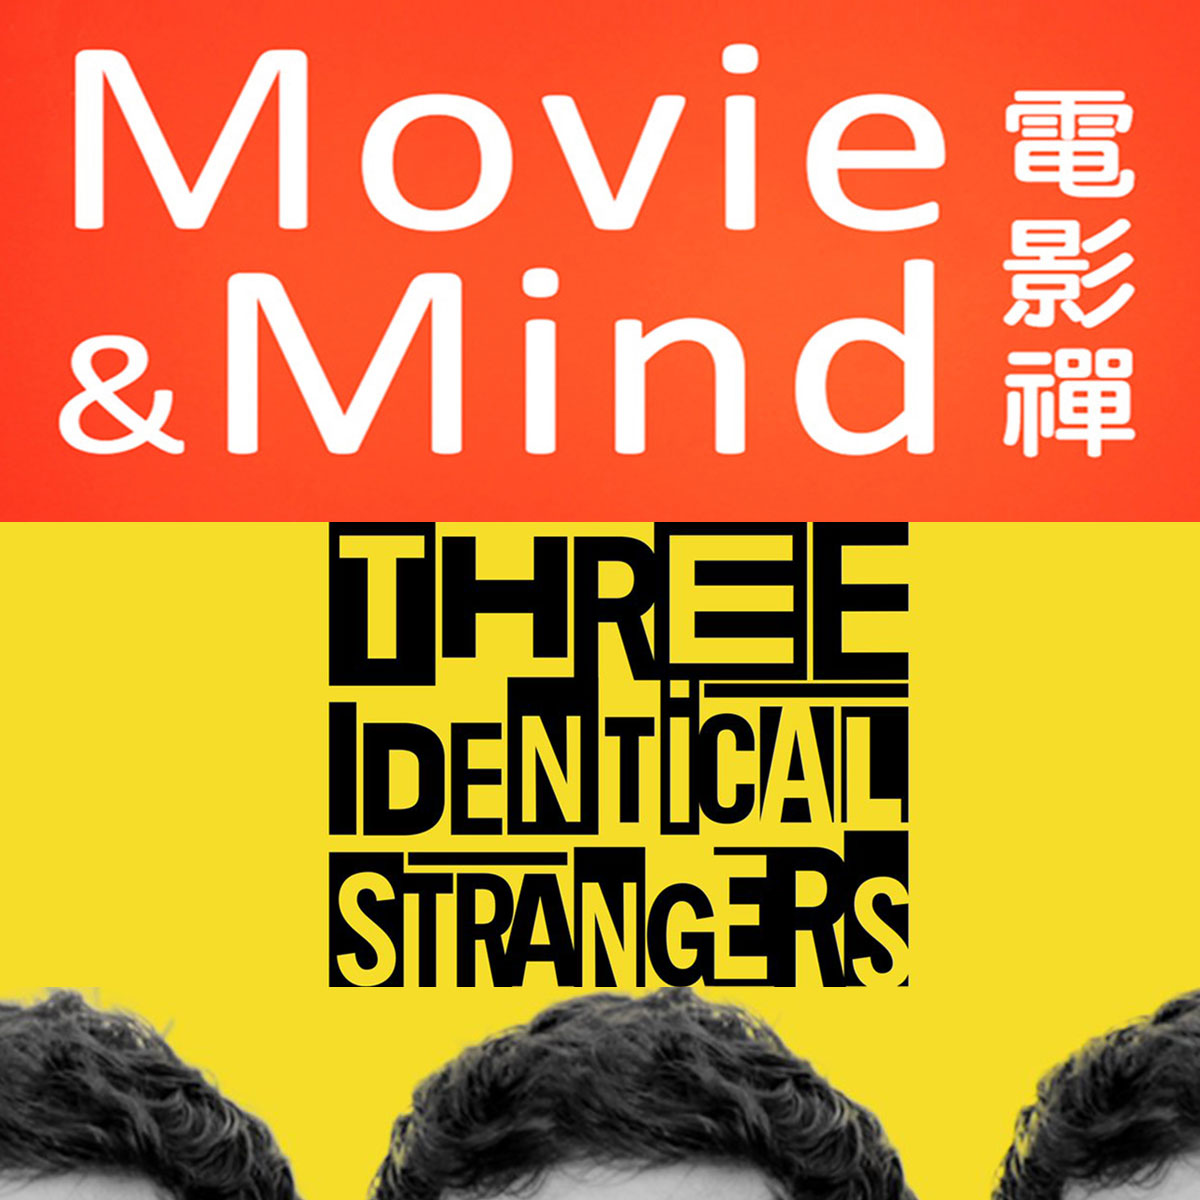 Movie&Mind-Three Identical Strangers